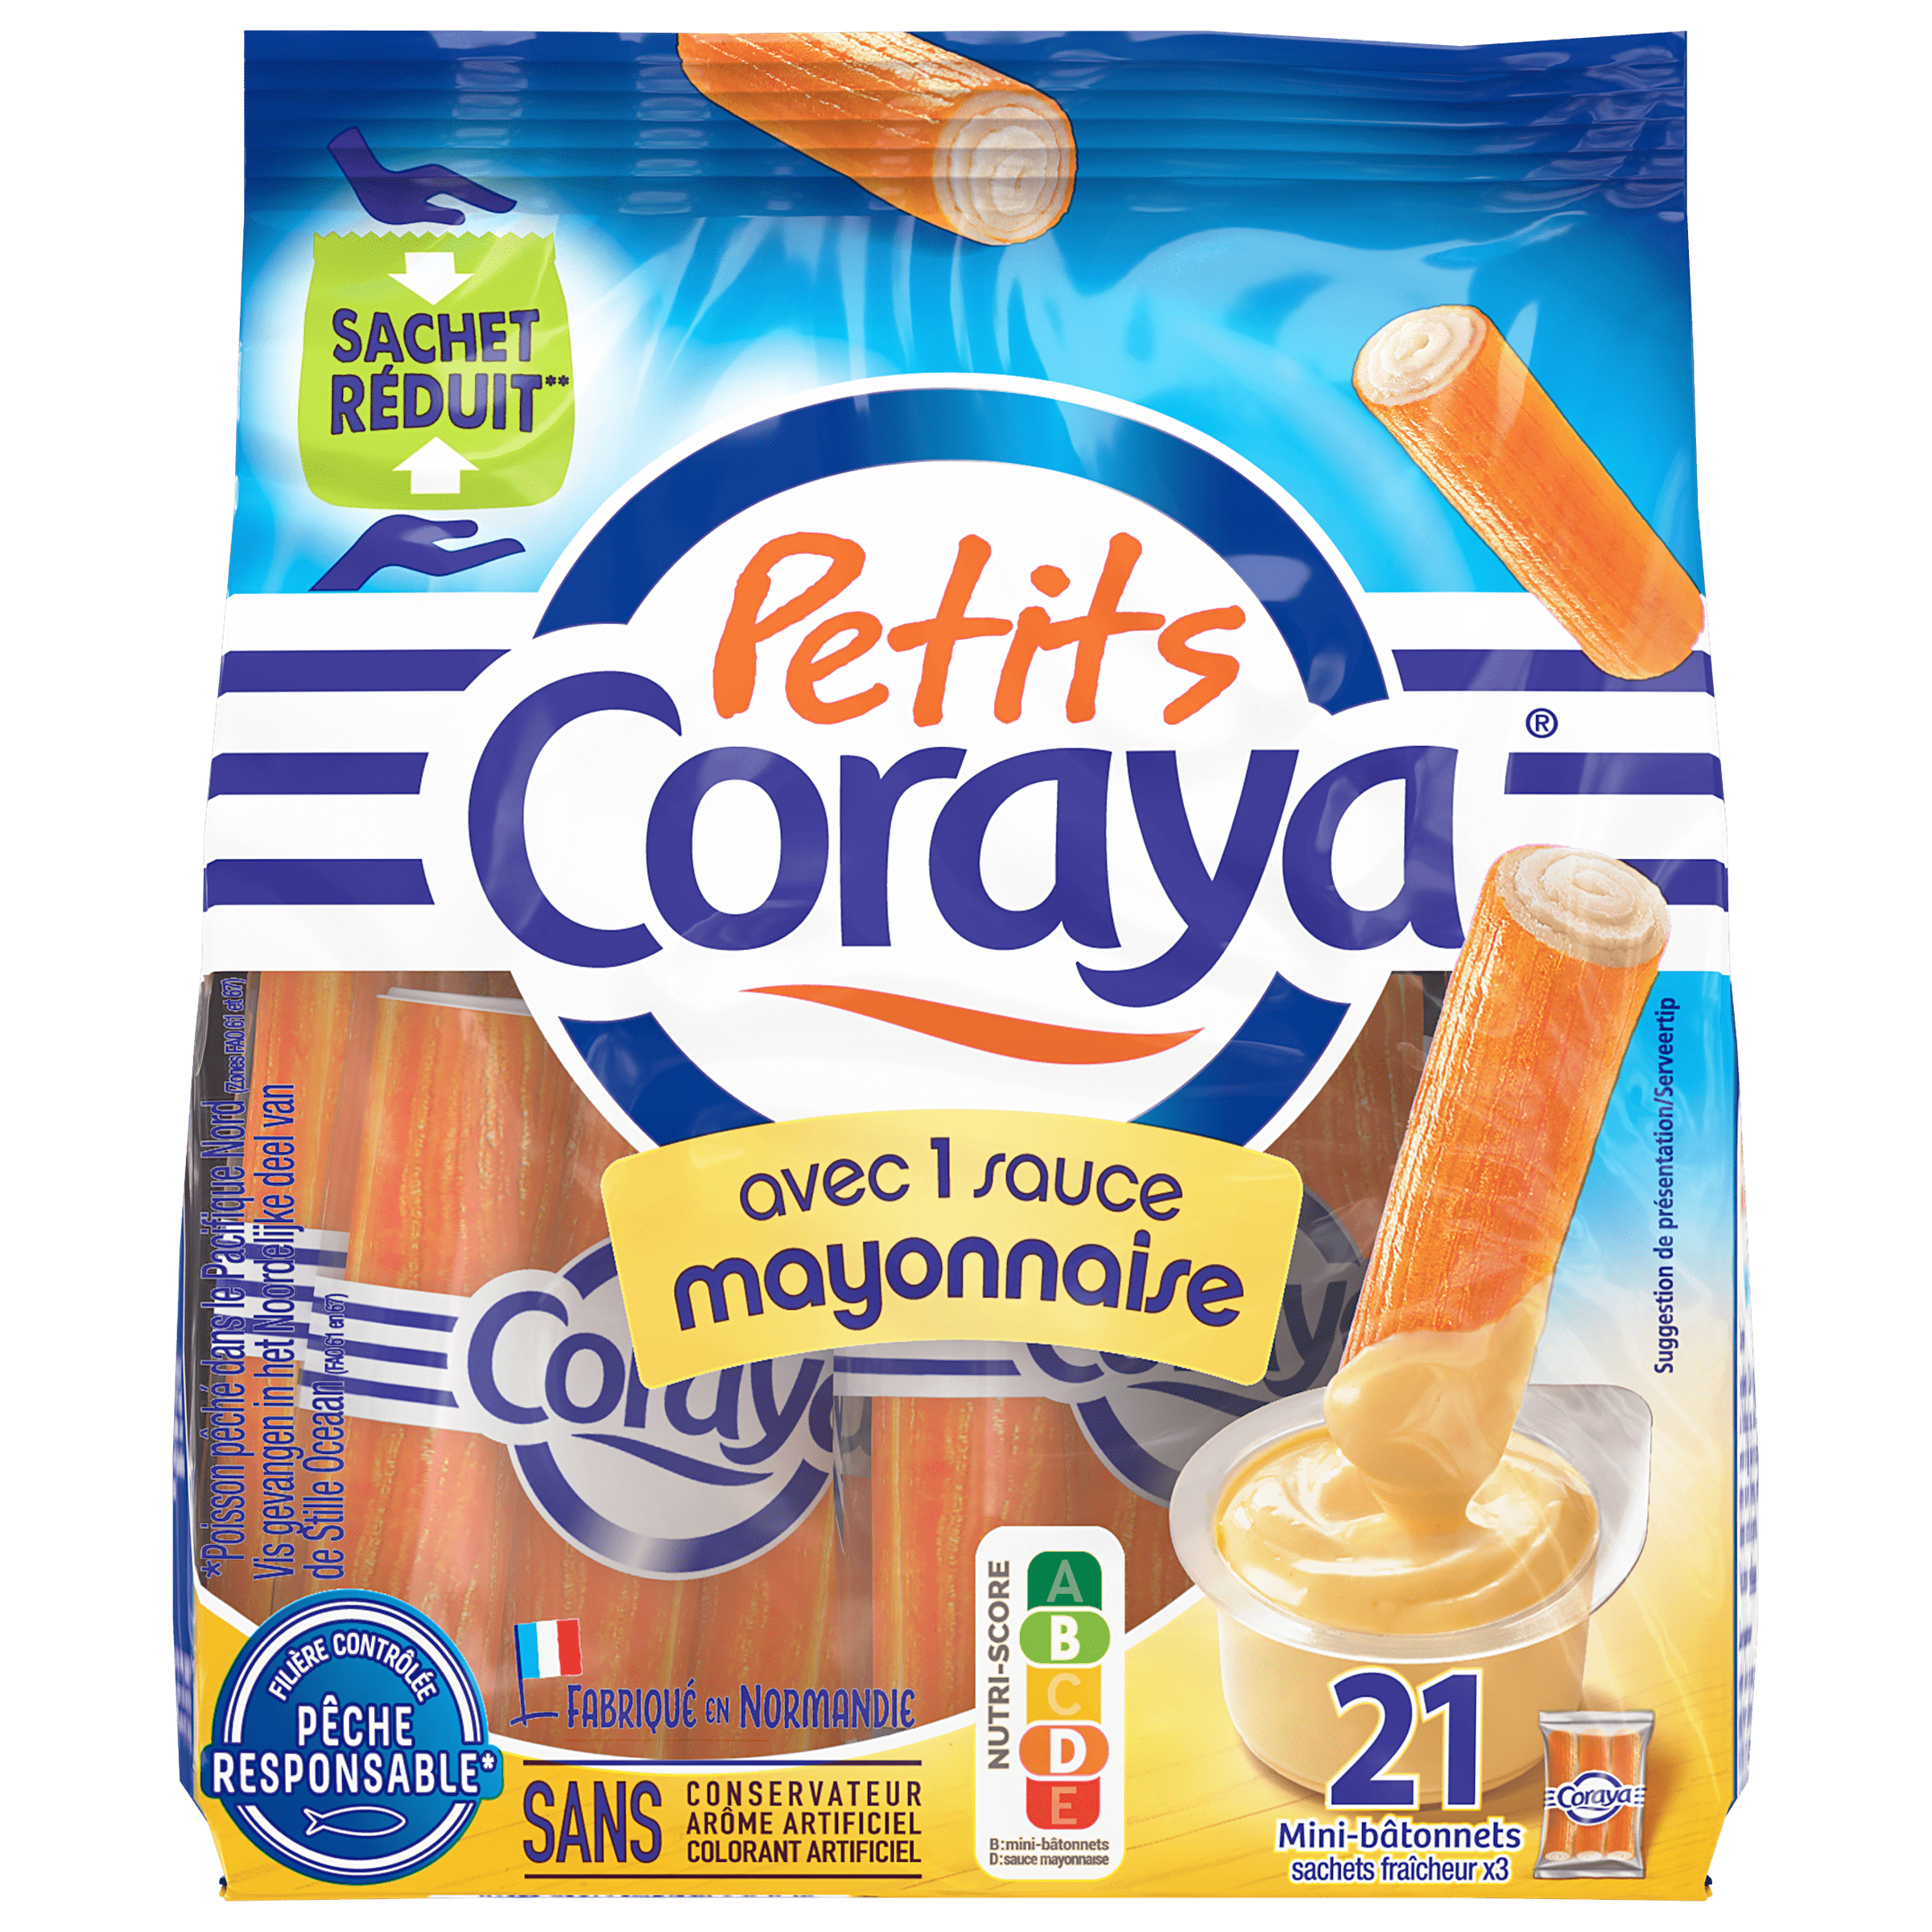 Petits Coraya sauce Mayonnaise sauce mayonnaise